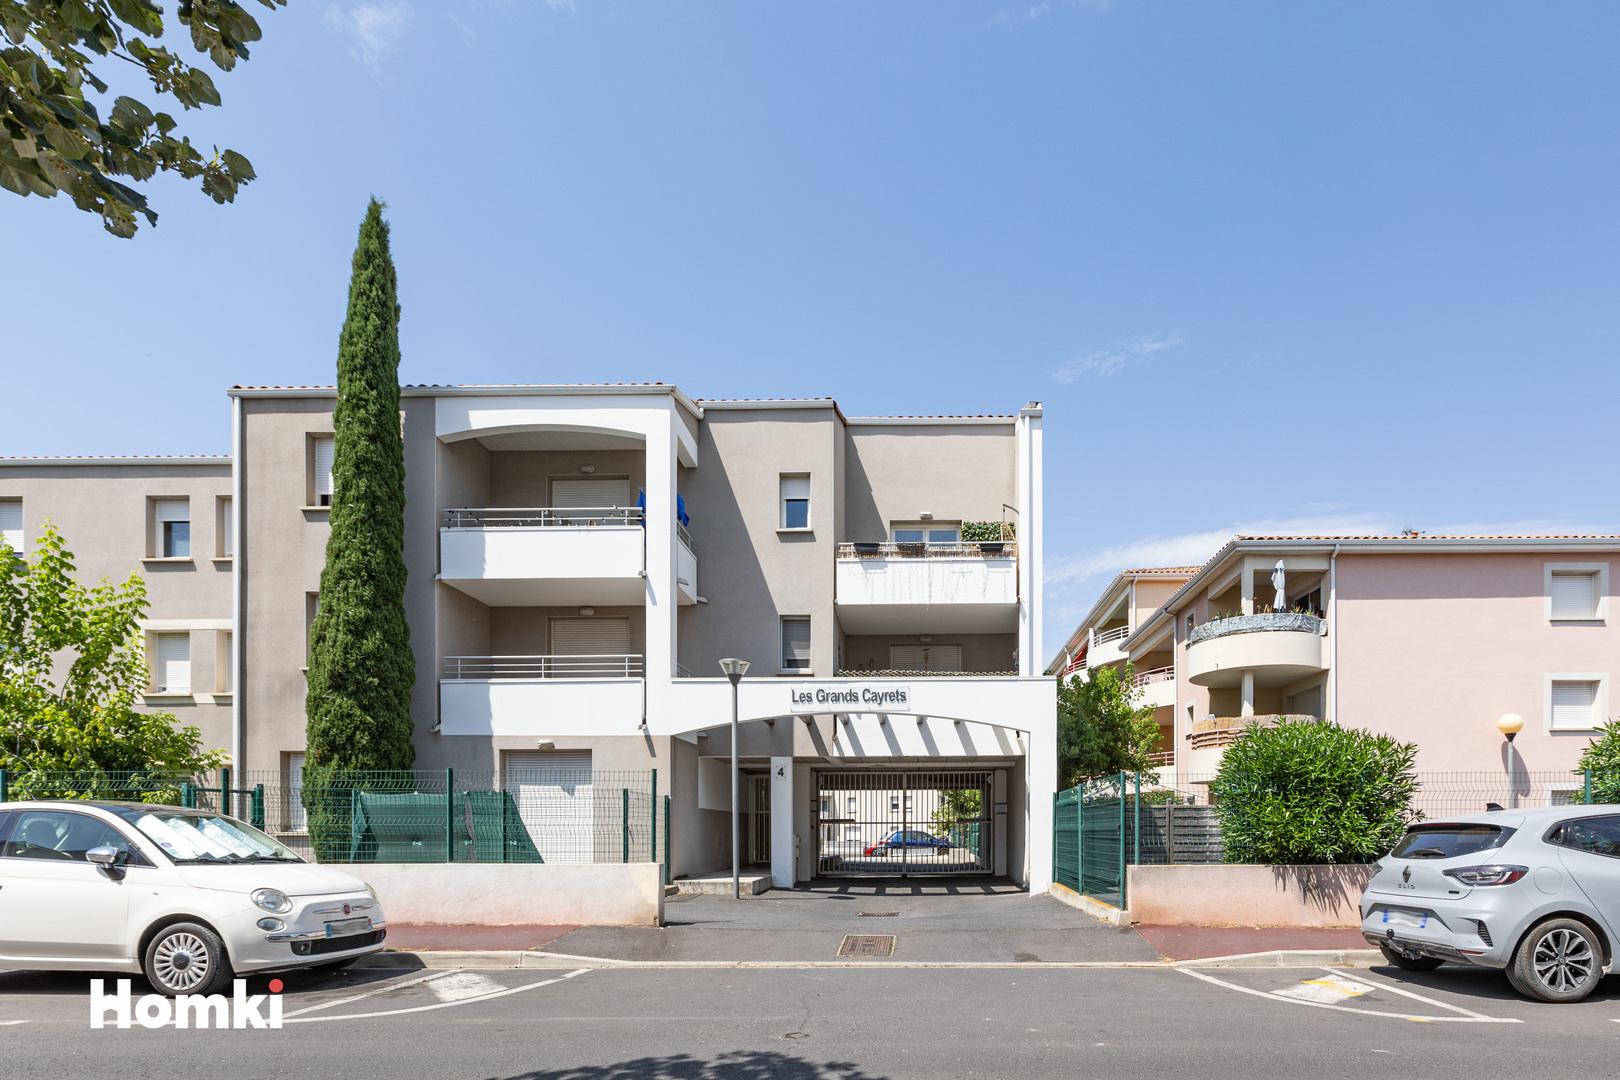 Homki - Vente Appartement  de 64.0 m² à Agde 34300